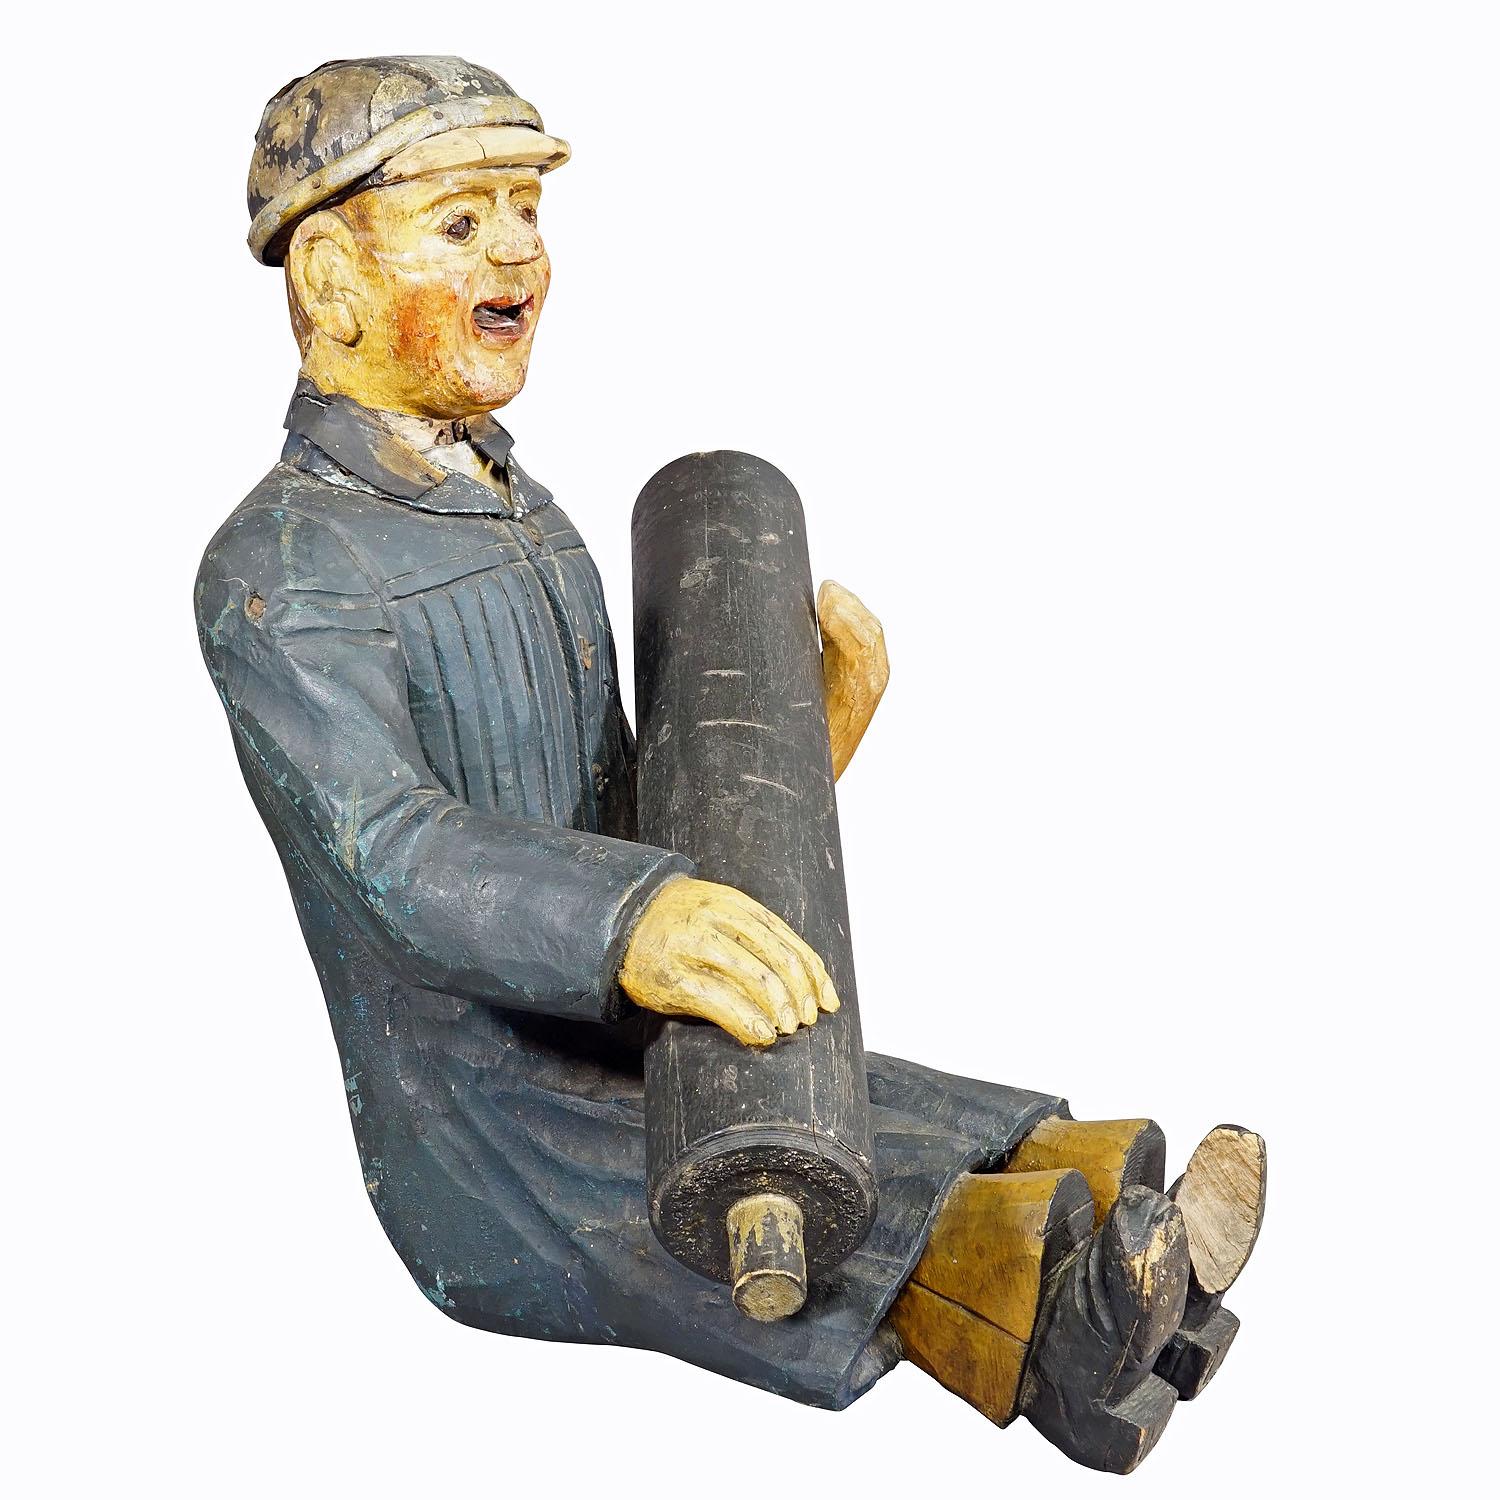 Antiker Feuermann aus einem Kinderwagen, Deutschland 1920er Jahre

Eine antike Holzskulptur eines Feuerwehrmanns. Wurde früher als Dekoration für das Feuerwehrauto eines bayerischen Kinderkarussells verwendet. Der Kopf verfügt über einen Mechanismus